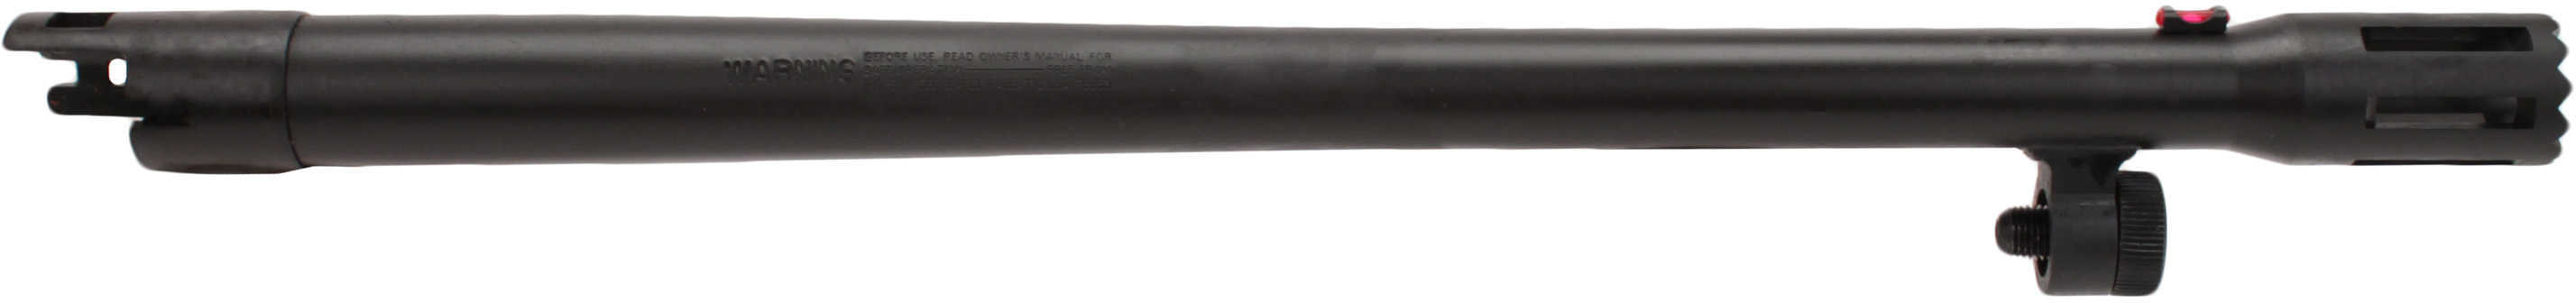 Moss Barrel 500 12 Gauge 18.5" Standoff Bead Sight Matt